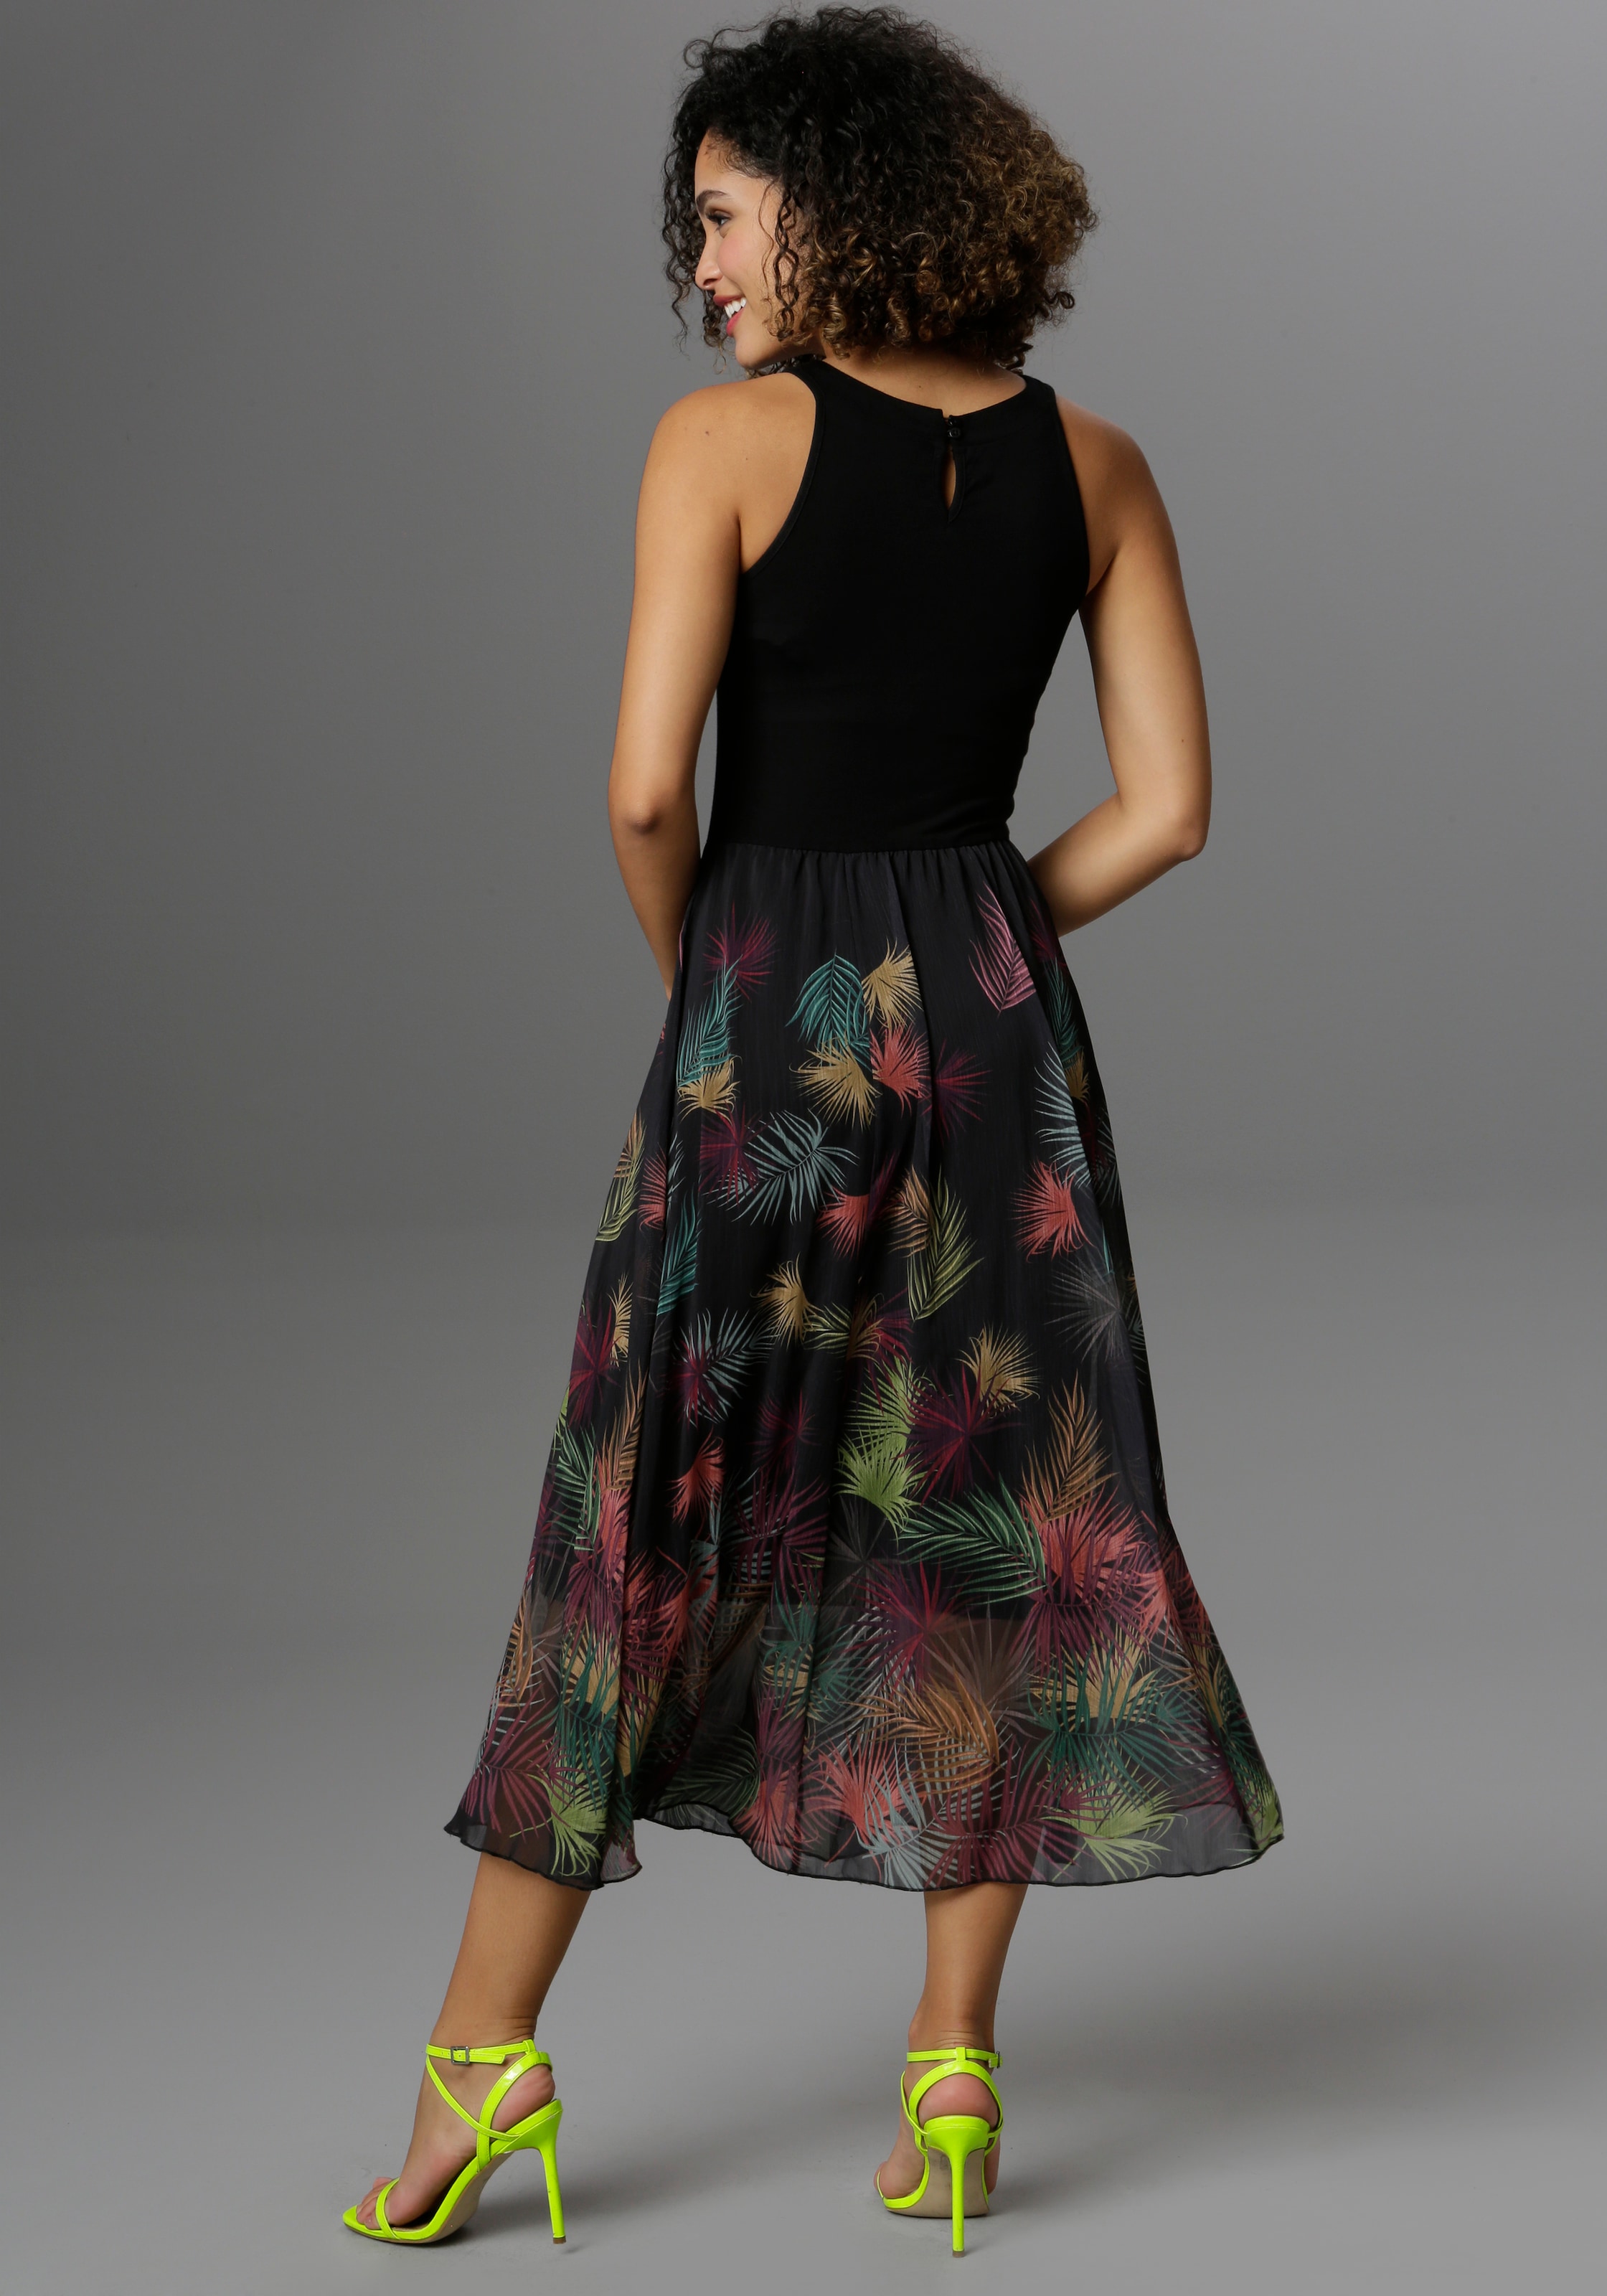 SELECTED versandkostenfrei Blätterdruck Aniston mit buntem Sommerkleid, bestellen ♕